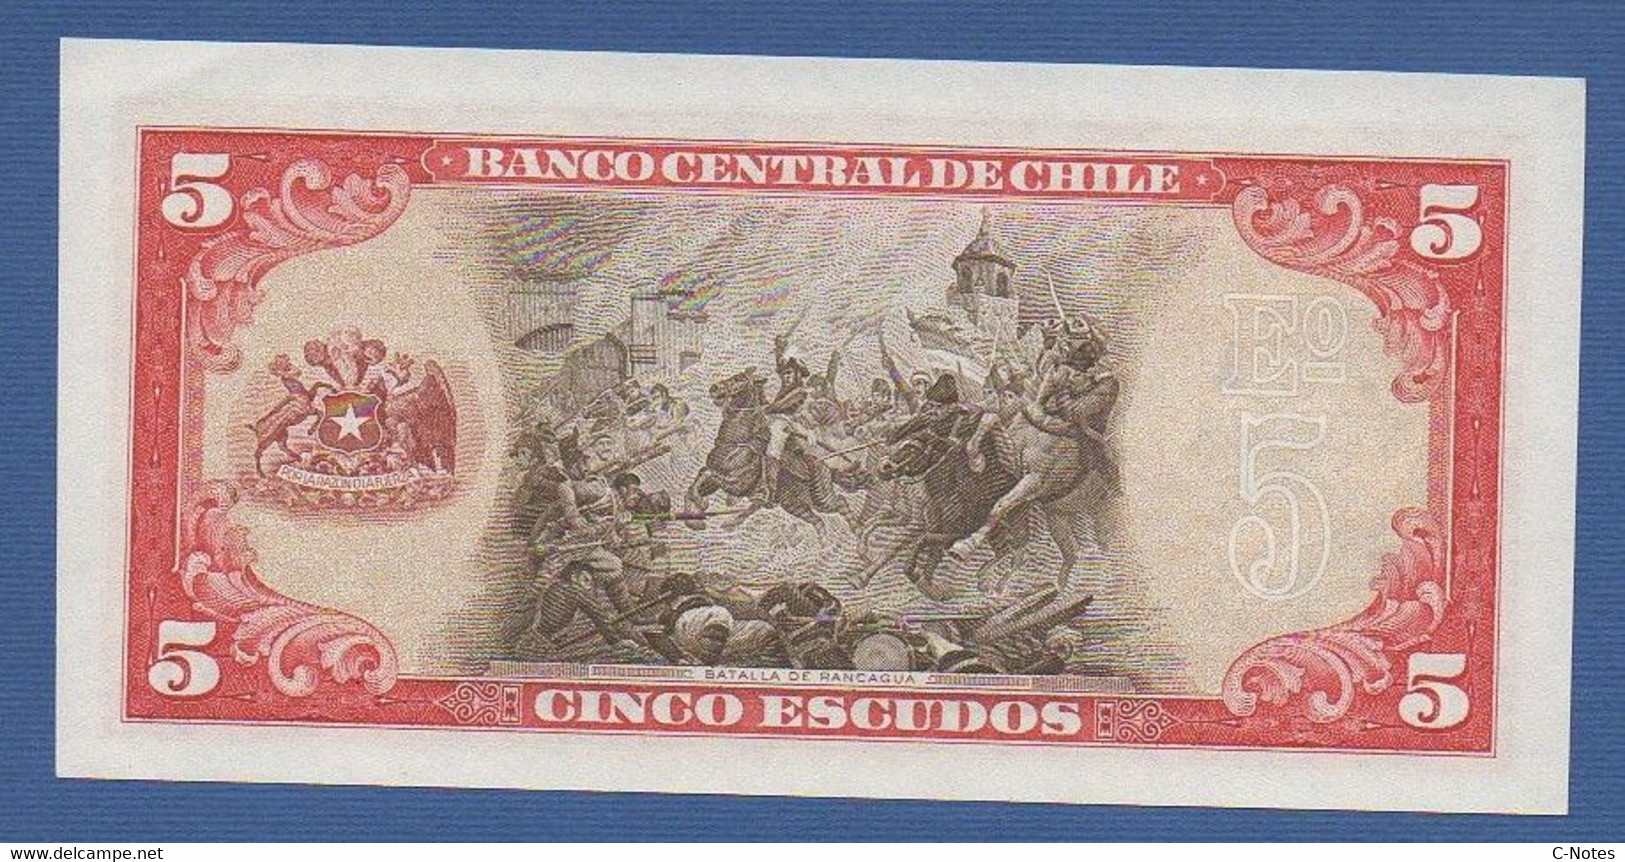 CHILE - P.138 (6) – 5 Escudos ND 1964 UNC, Serie E1 0913292 - Chili